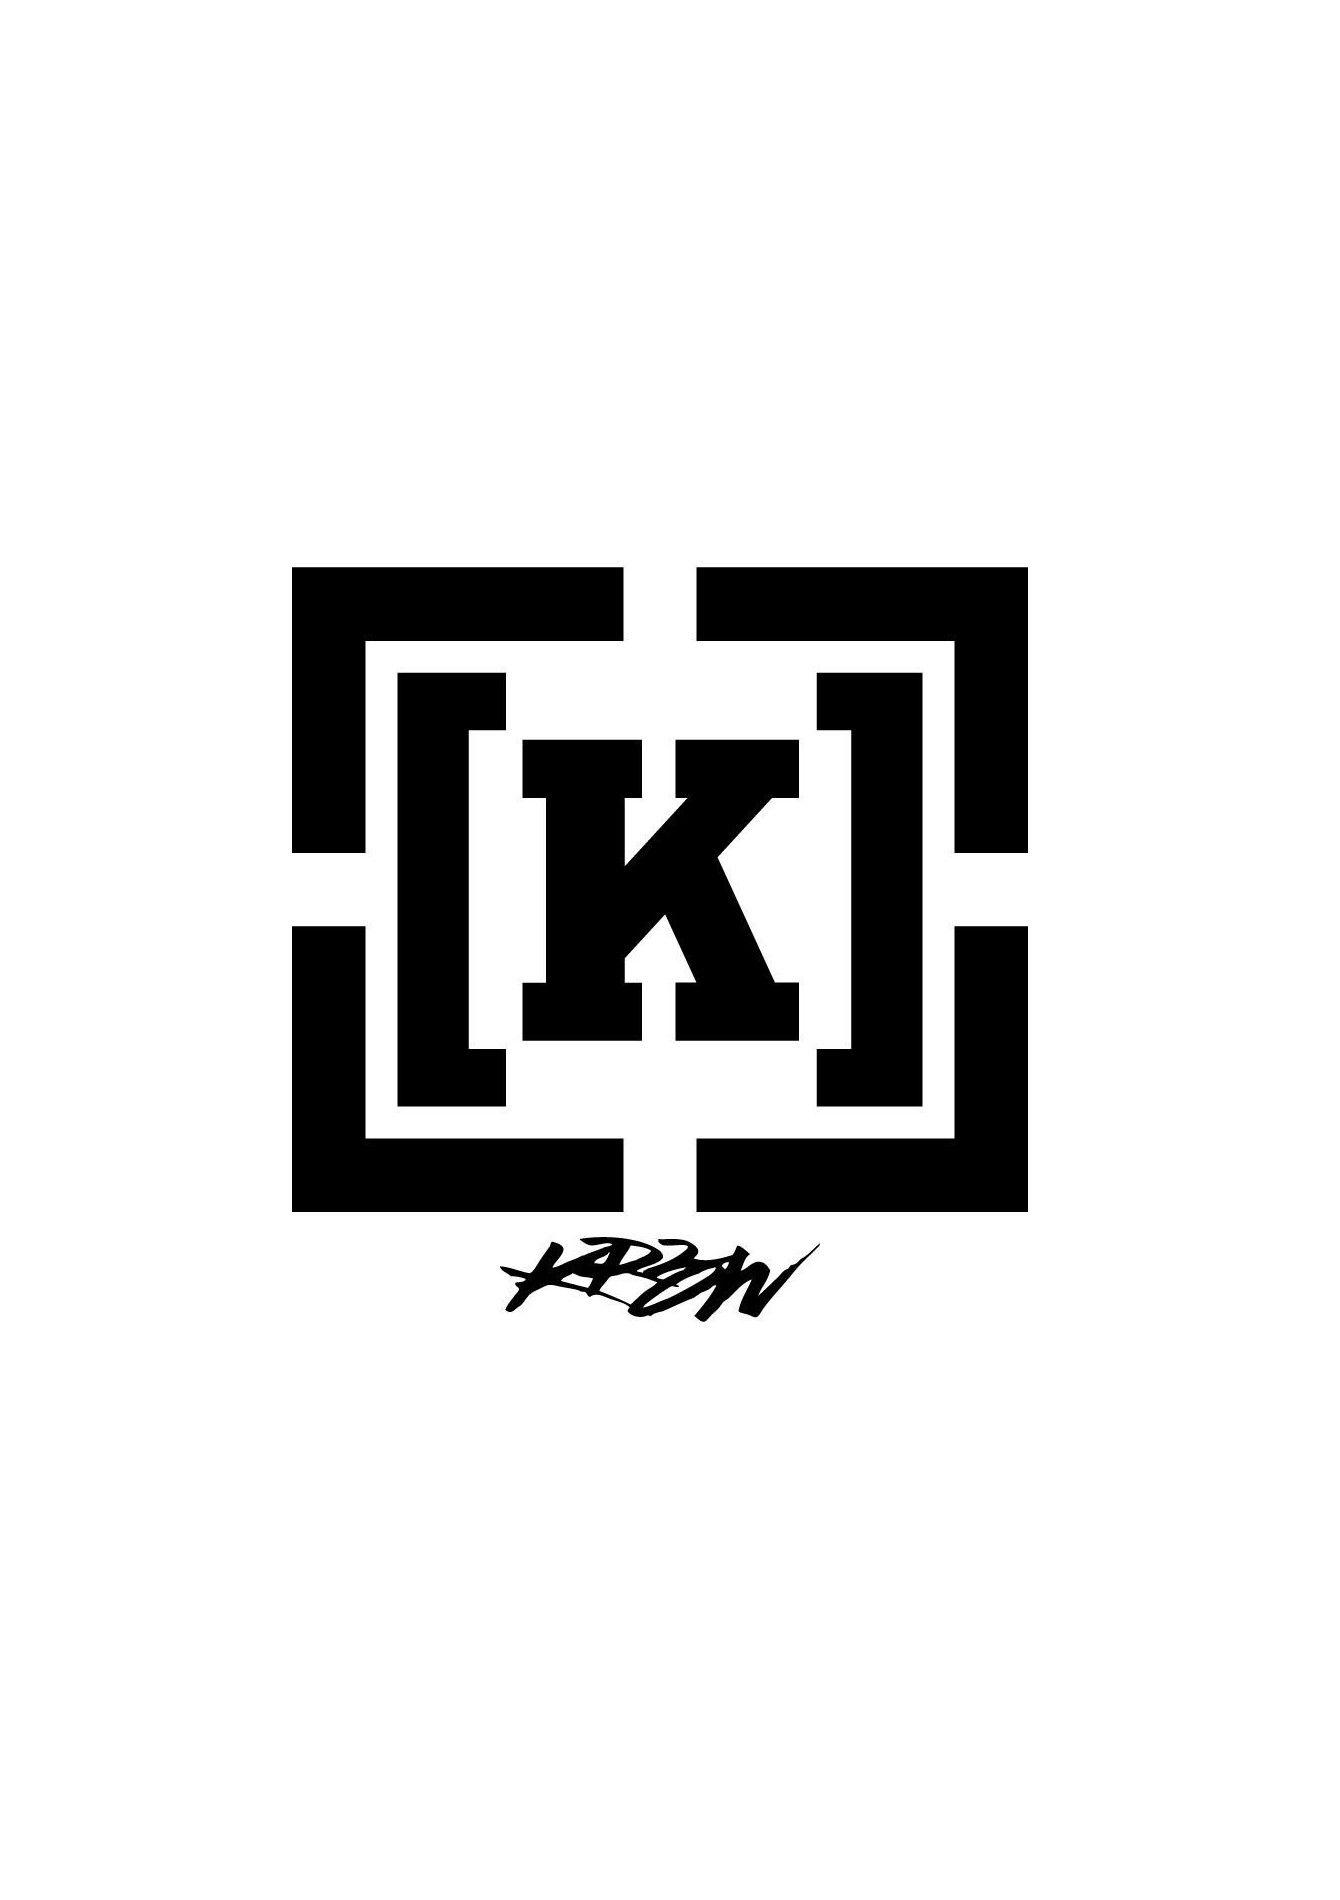 Krew Logo - KREW K SLIM ACID GREY